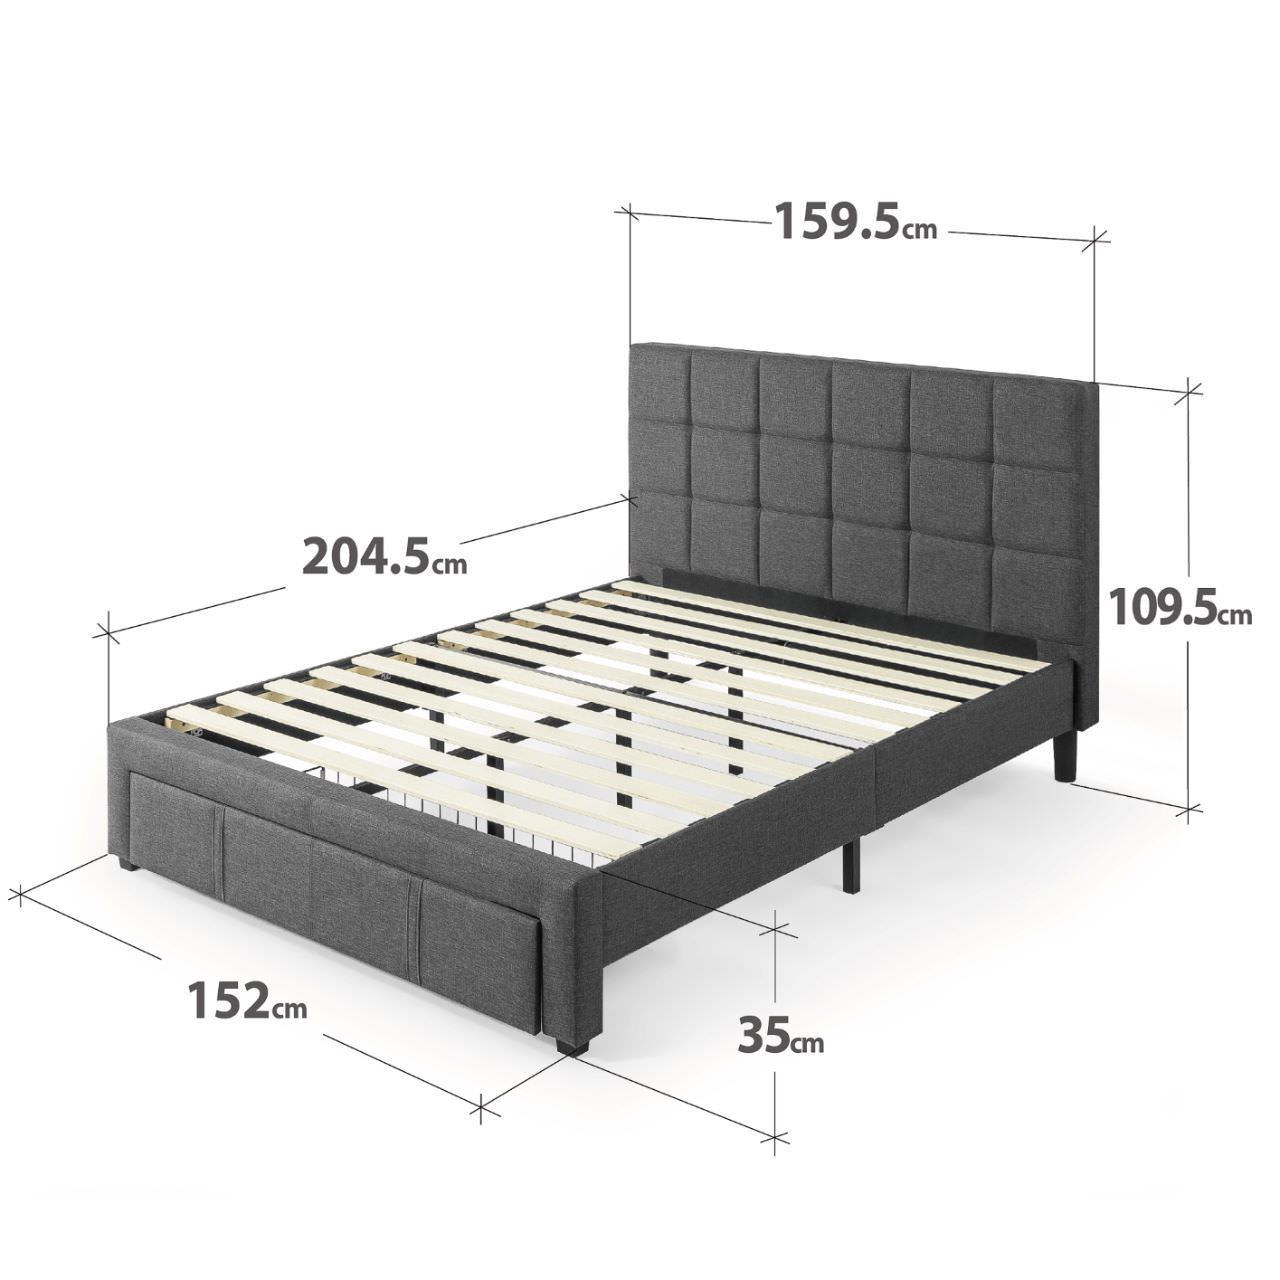 Kích thước giường ngủ đơn hiện đại 1m5 x 2m